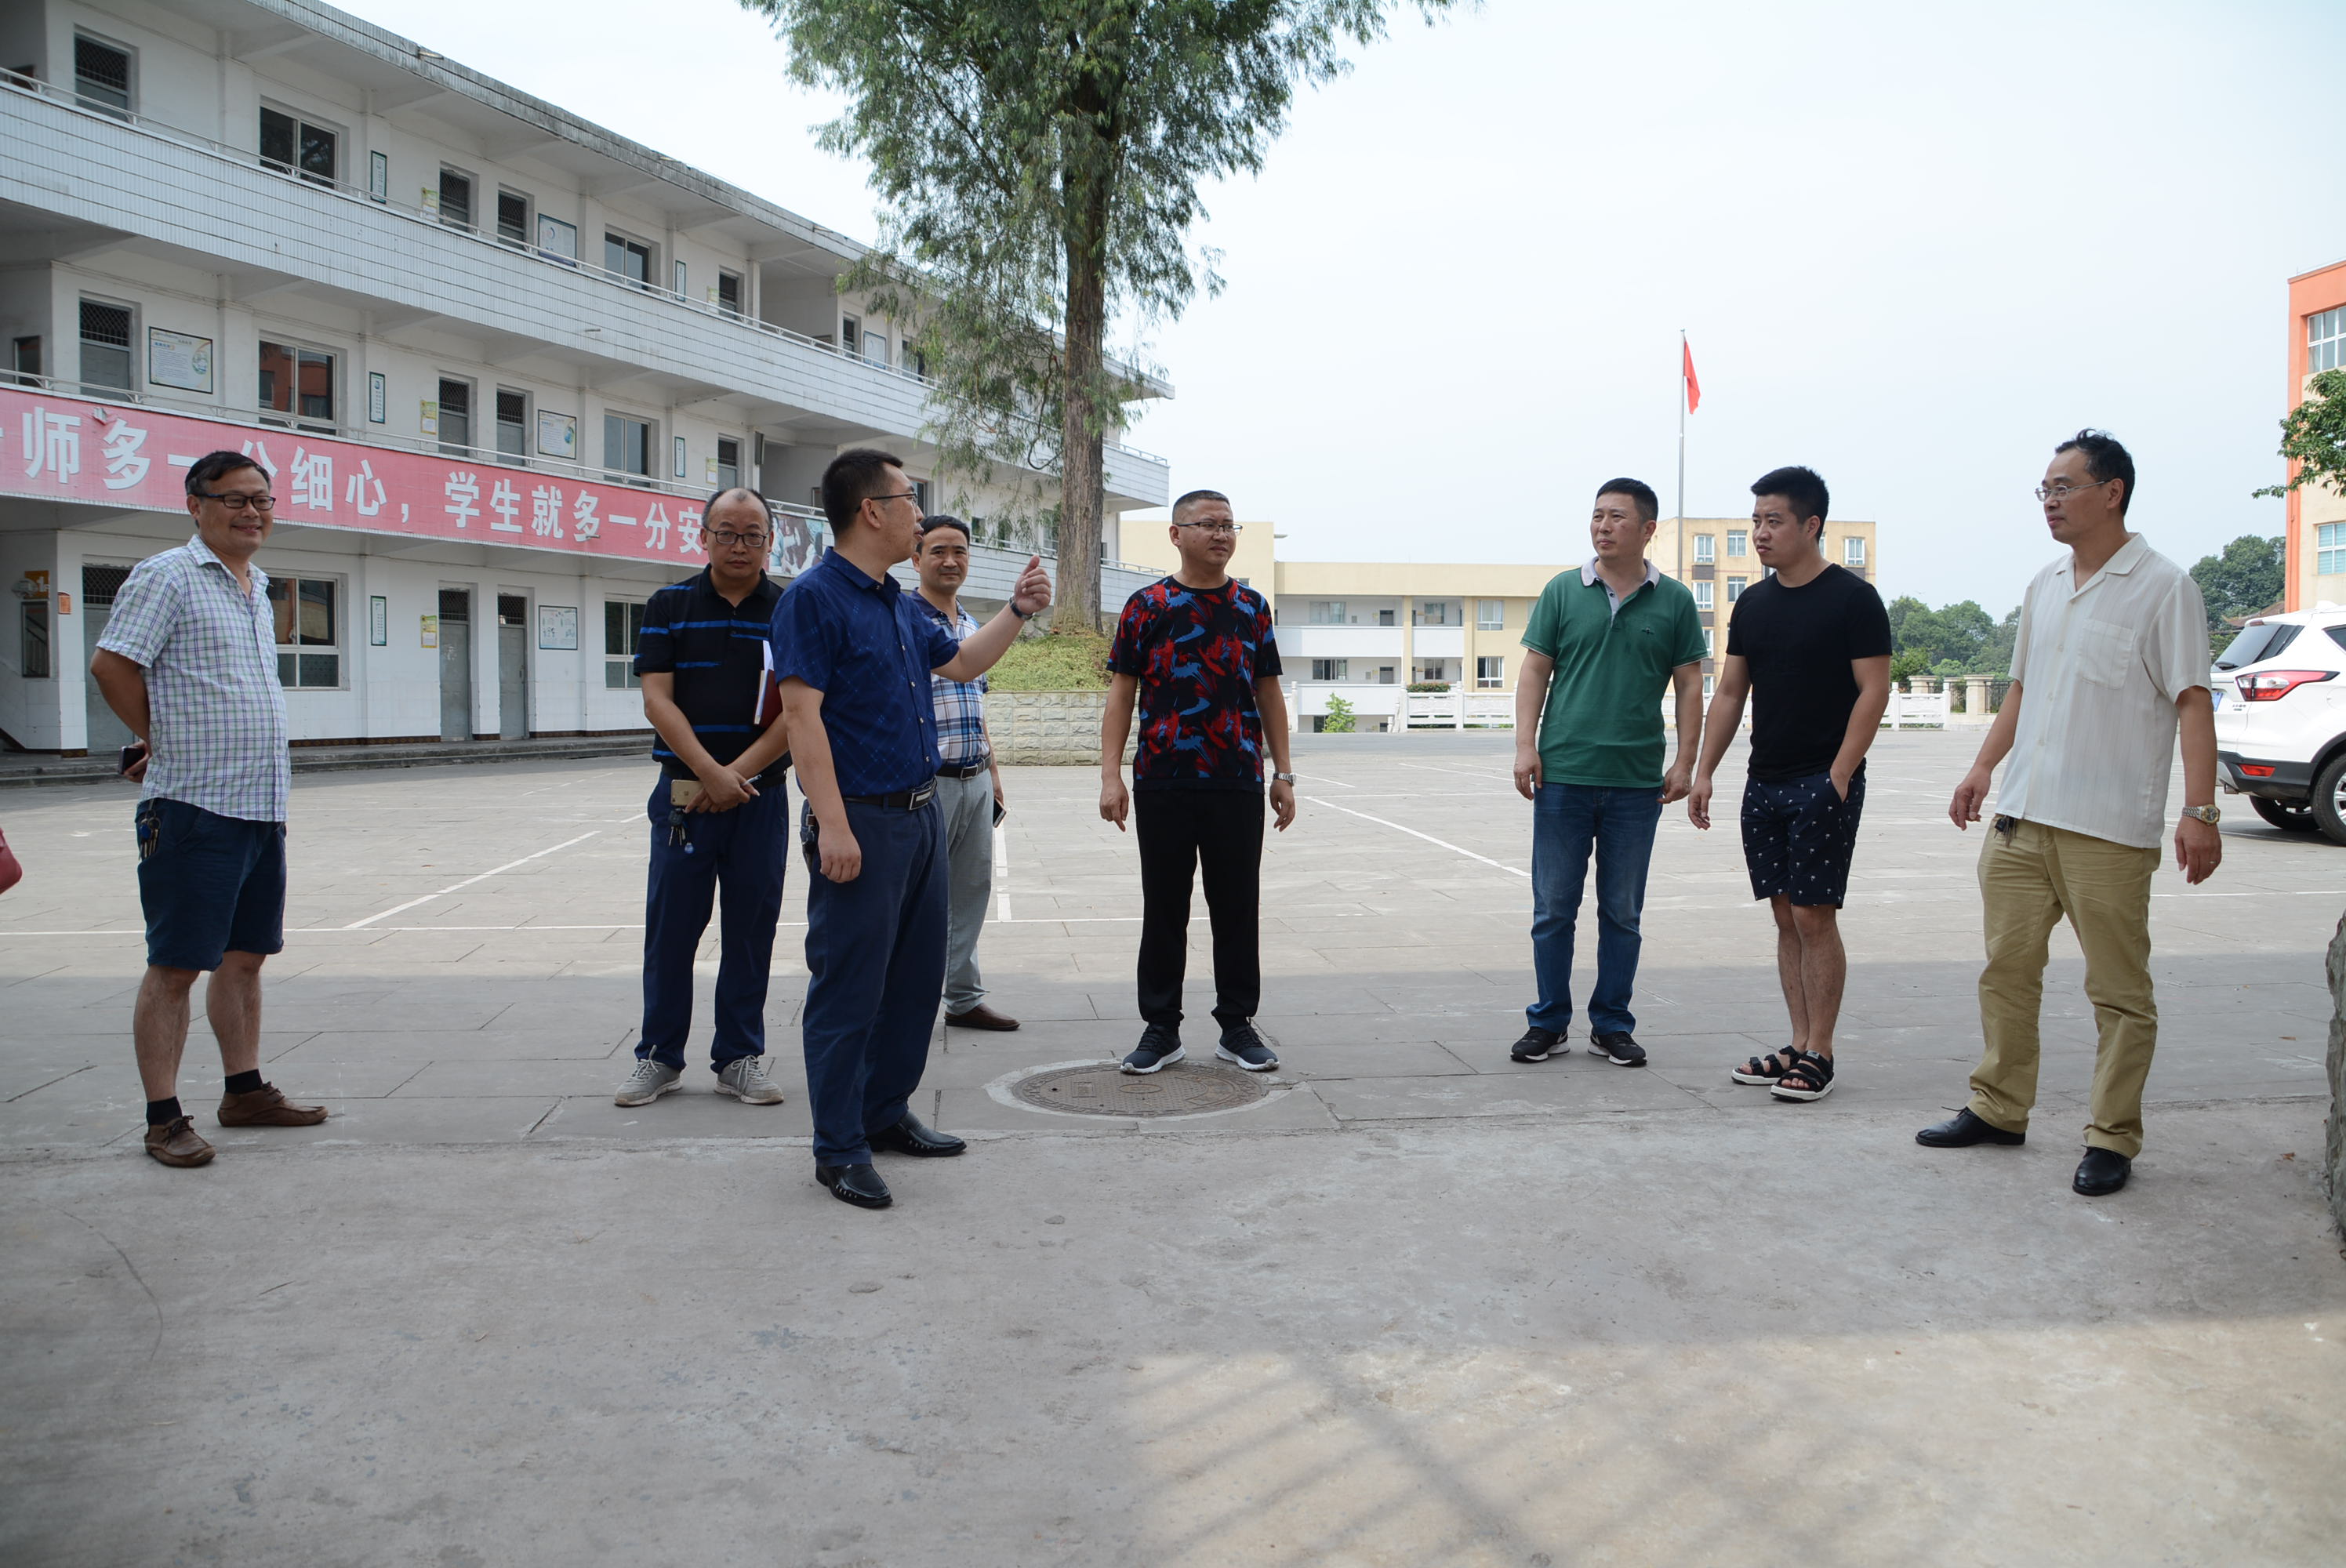 教育 正文 7月2日,泸州市相关领导对合江县虎头镇中心校安全社区建设